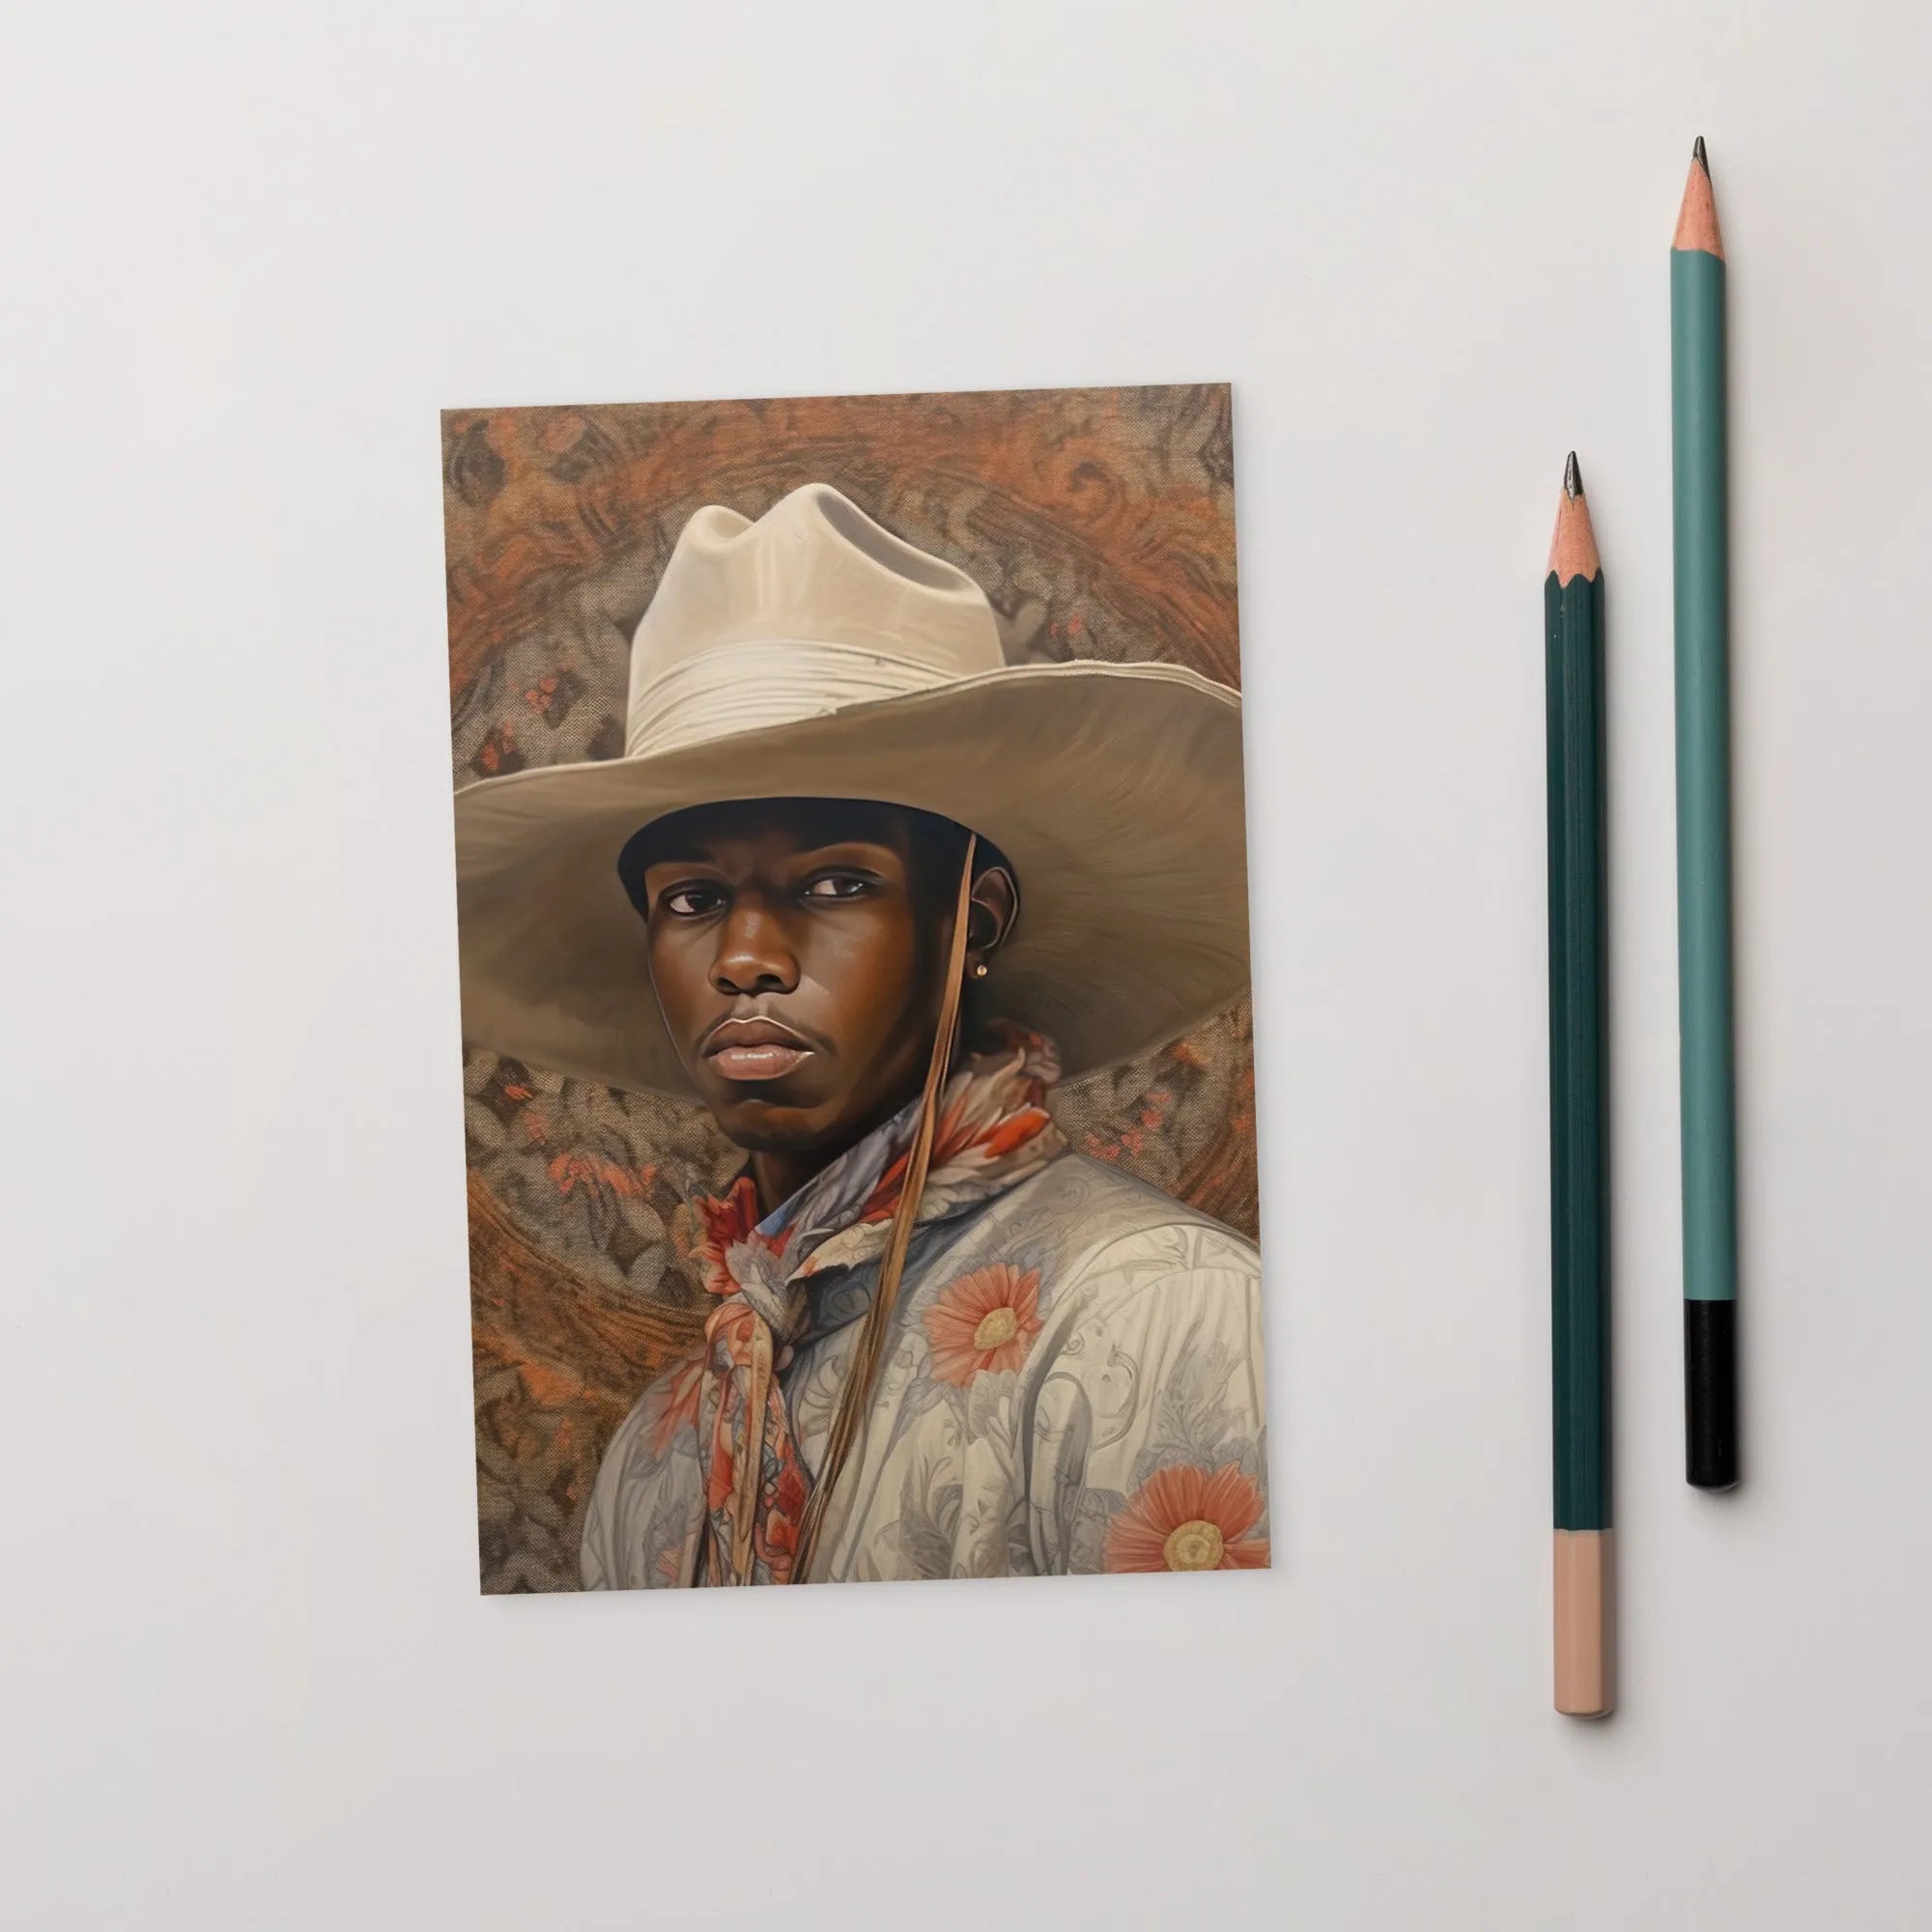 Titus - Gay Black Cowboy Dandy Aesthetic Art Print - 4’x6’ - Posters Prints & Visual Artwork - Aesthetic Art